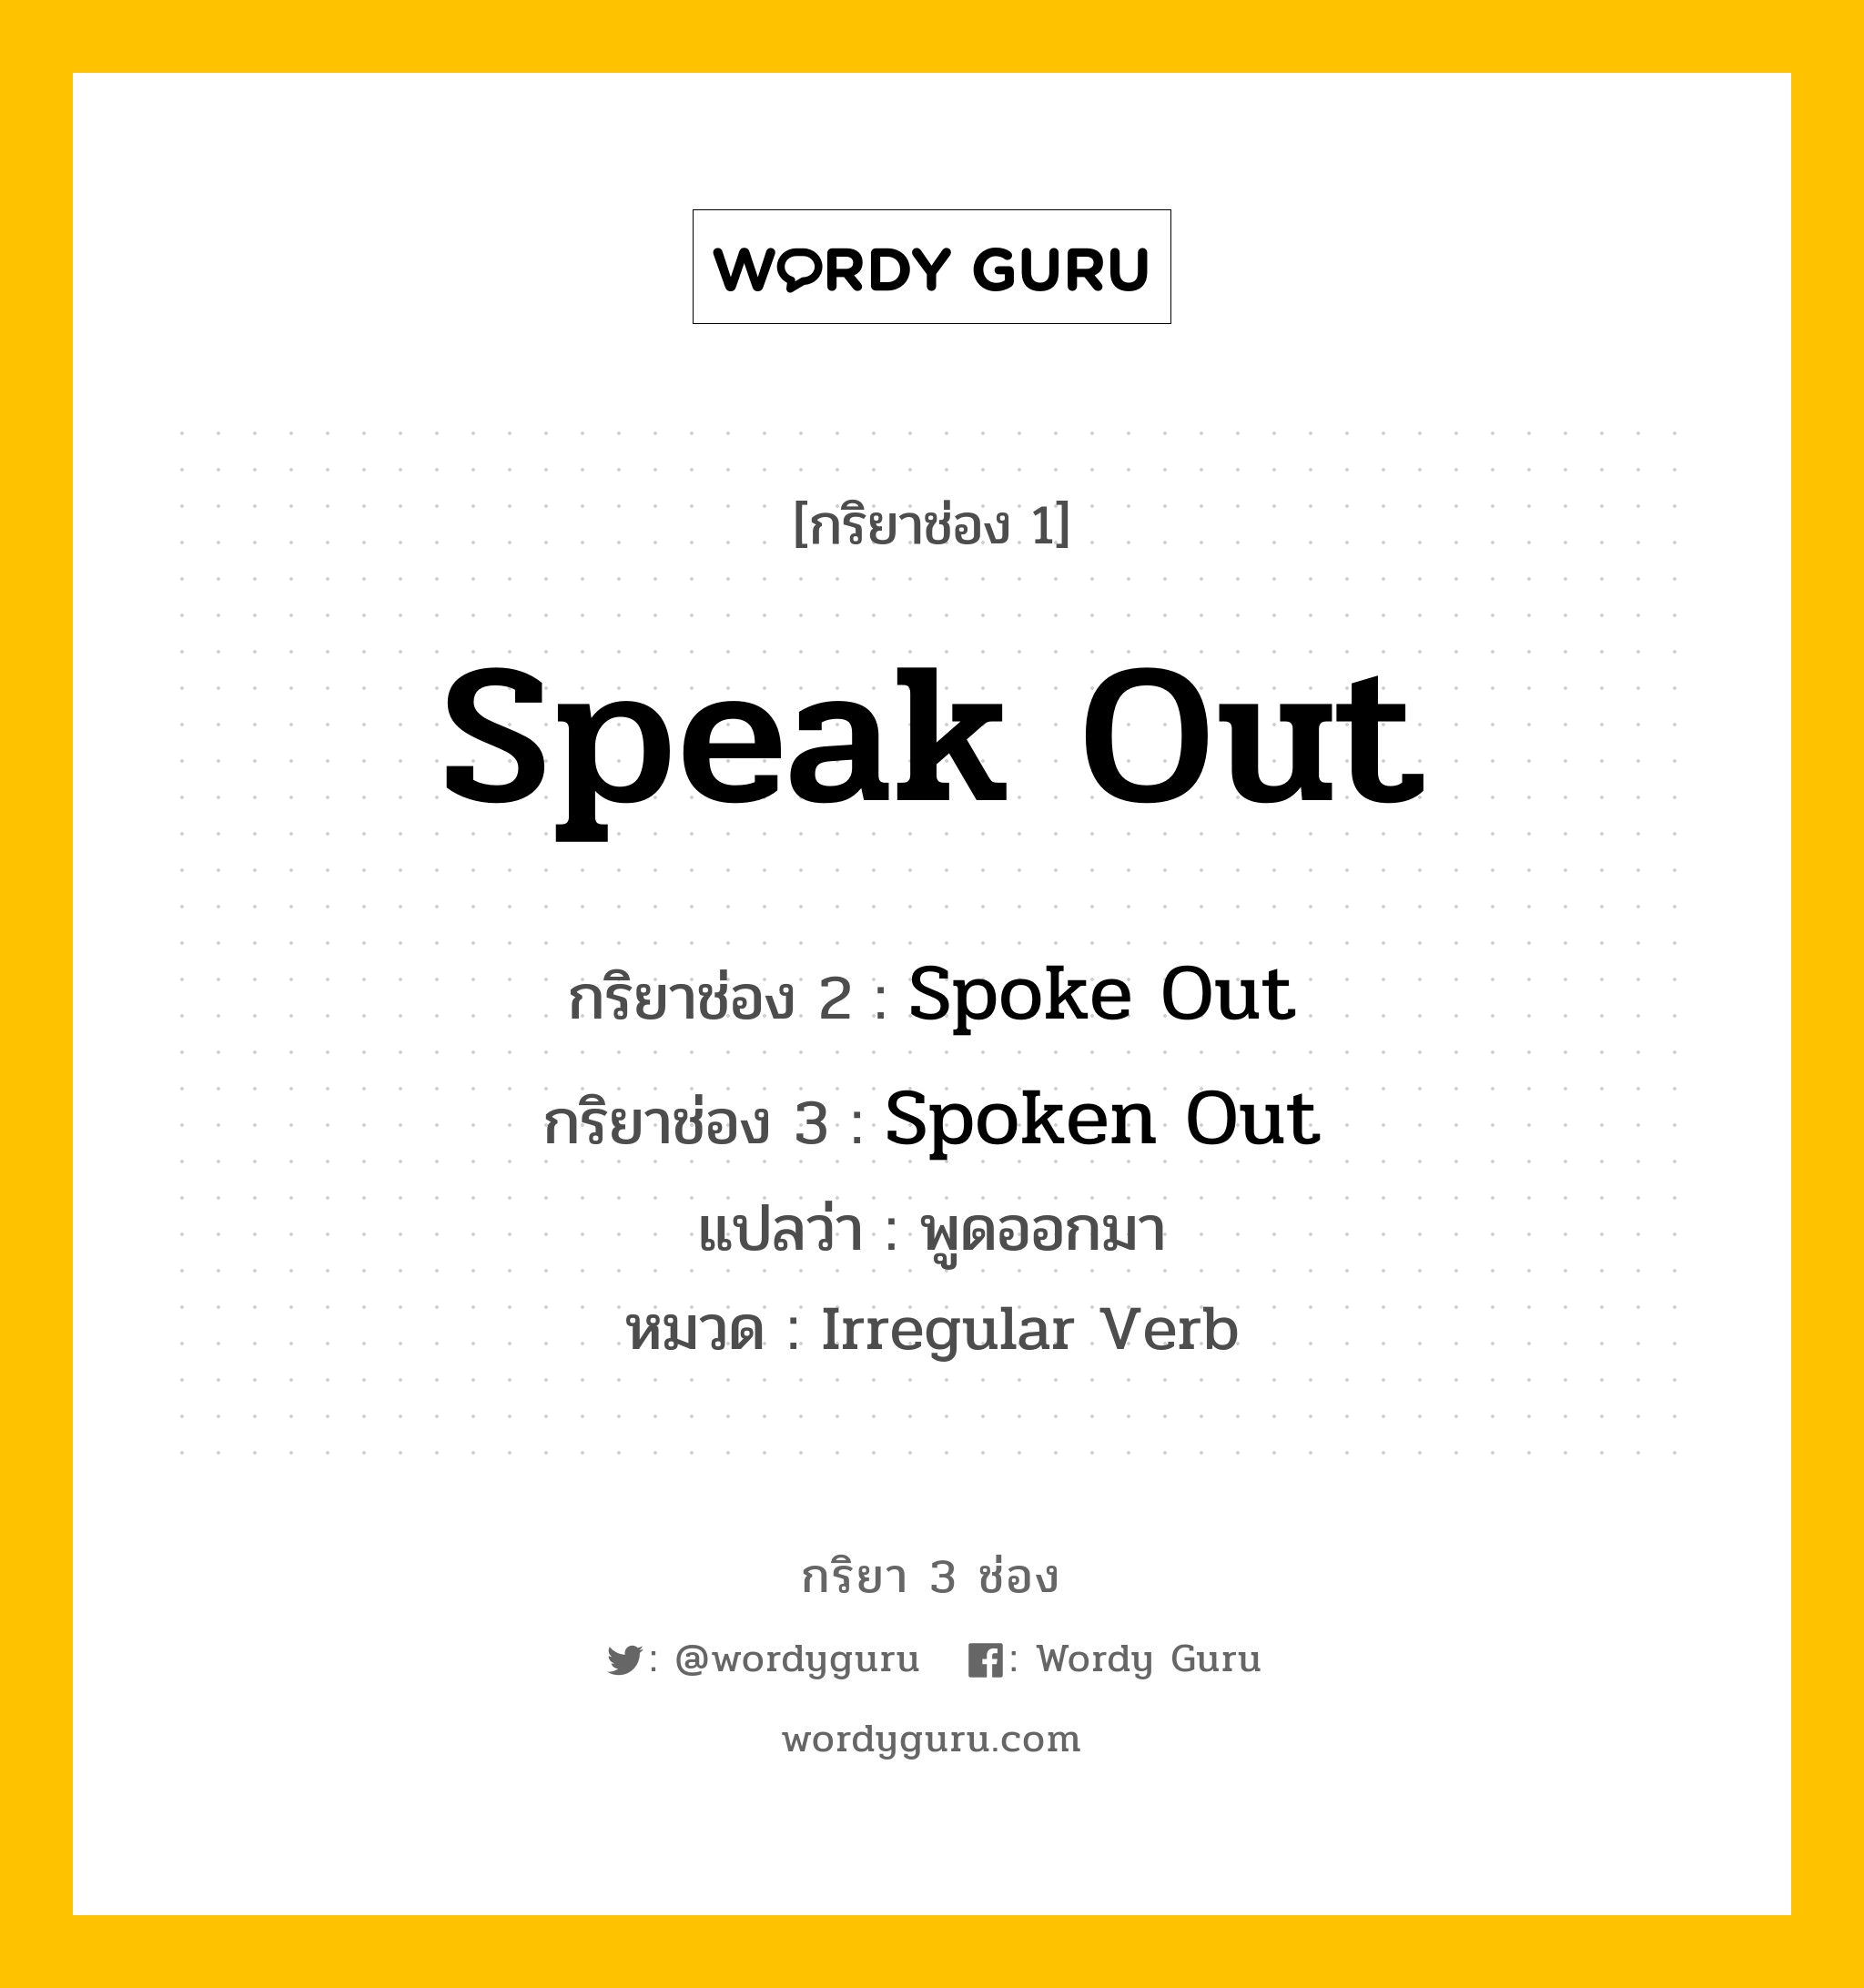 กริยา 3 ช่อง ของ Speak Out คืออะไร? มาดูคำอ่าน คำแปลกันเลย, กริยาช่อง 1 Speak Out กริยาช่อง 2 Spoke Out กริยาช่อง 3 Spoken Out แปลว่า พูดออกมา หมวด Irregular Verb หมวด Irregular Verb